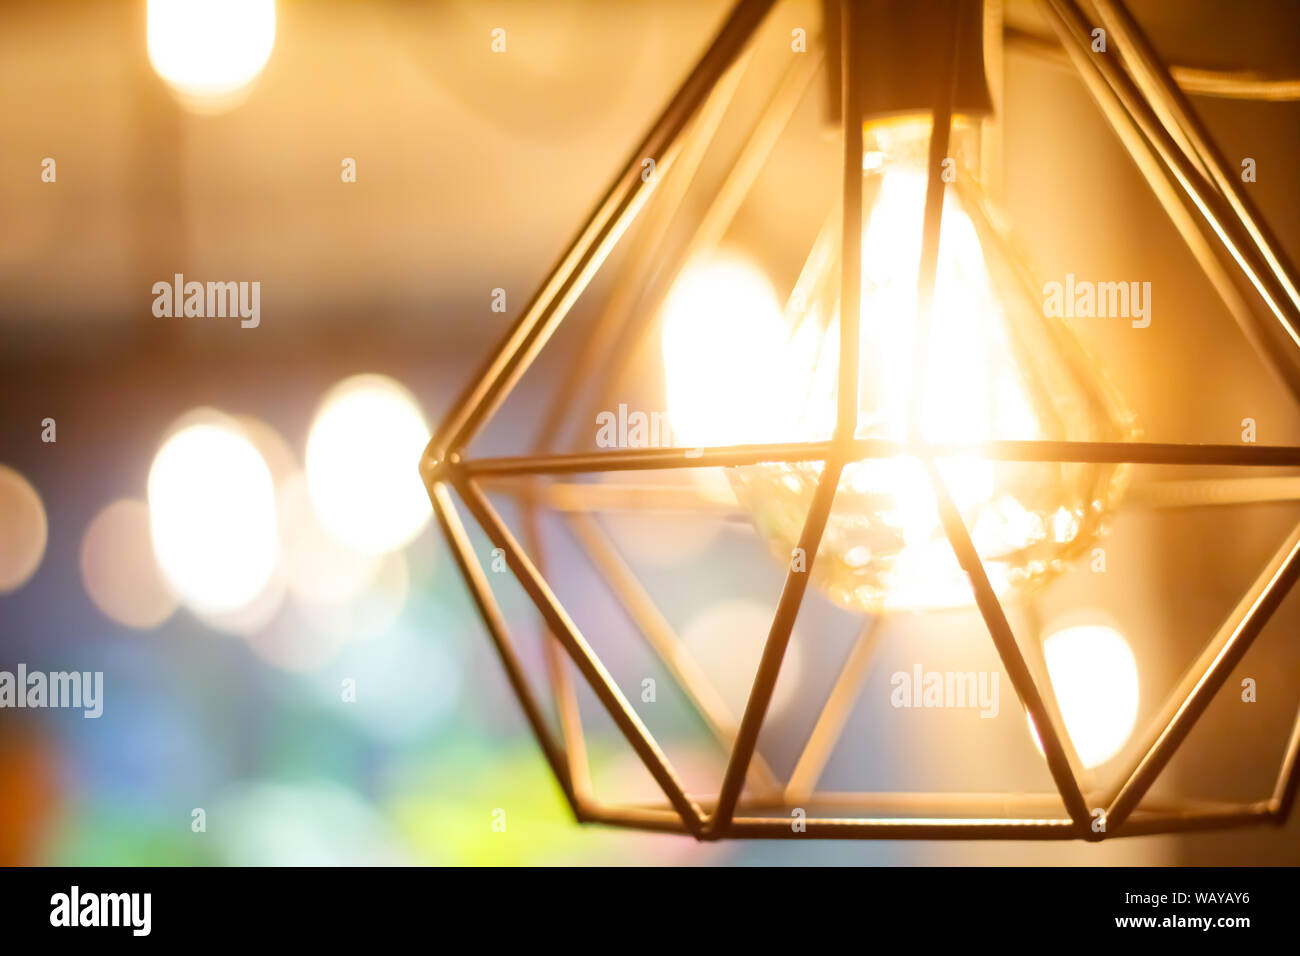 In der Nähe von glühenden sphärischen Retro Vintage Glühlampe Edison hängenden Glühbirne gegen den Hintergrund unscharf andere Lampen, selektiven Fokus Stockfoto